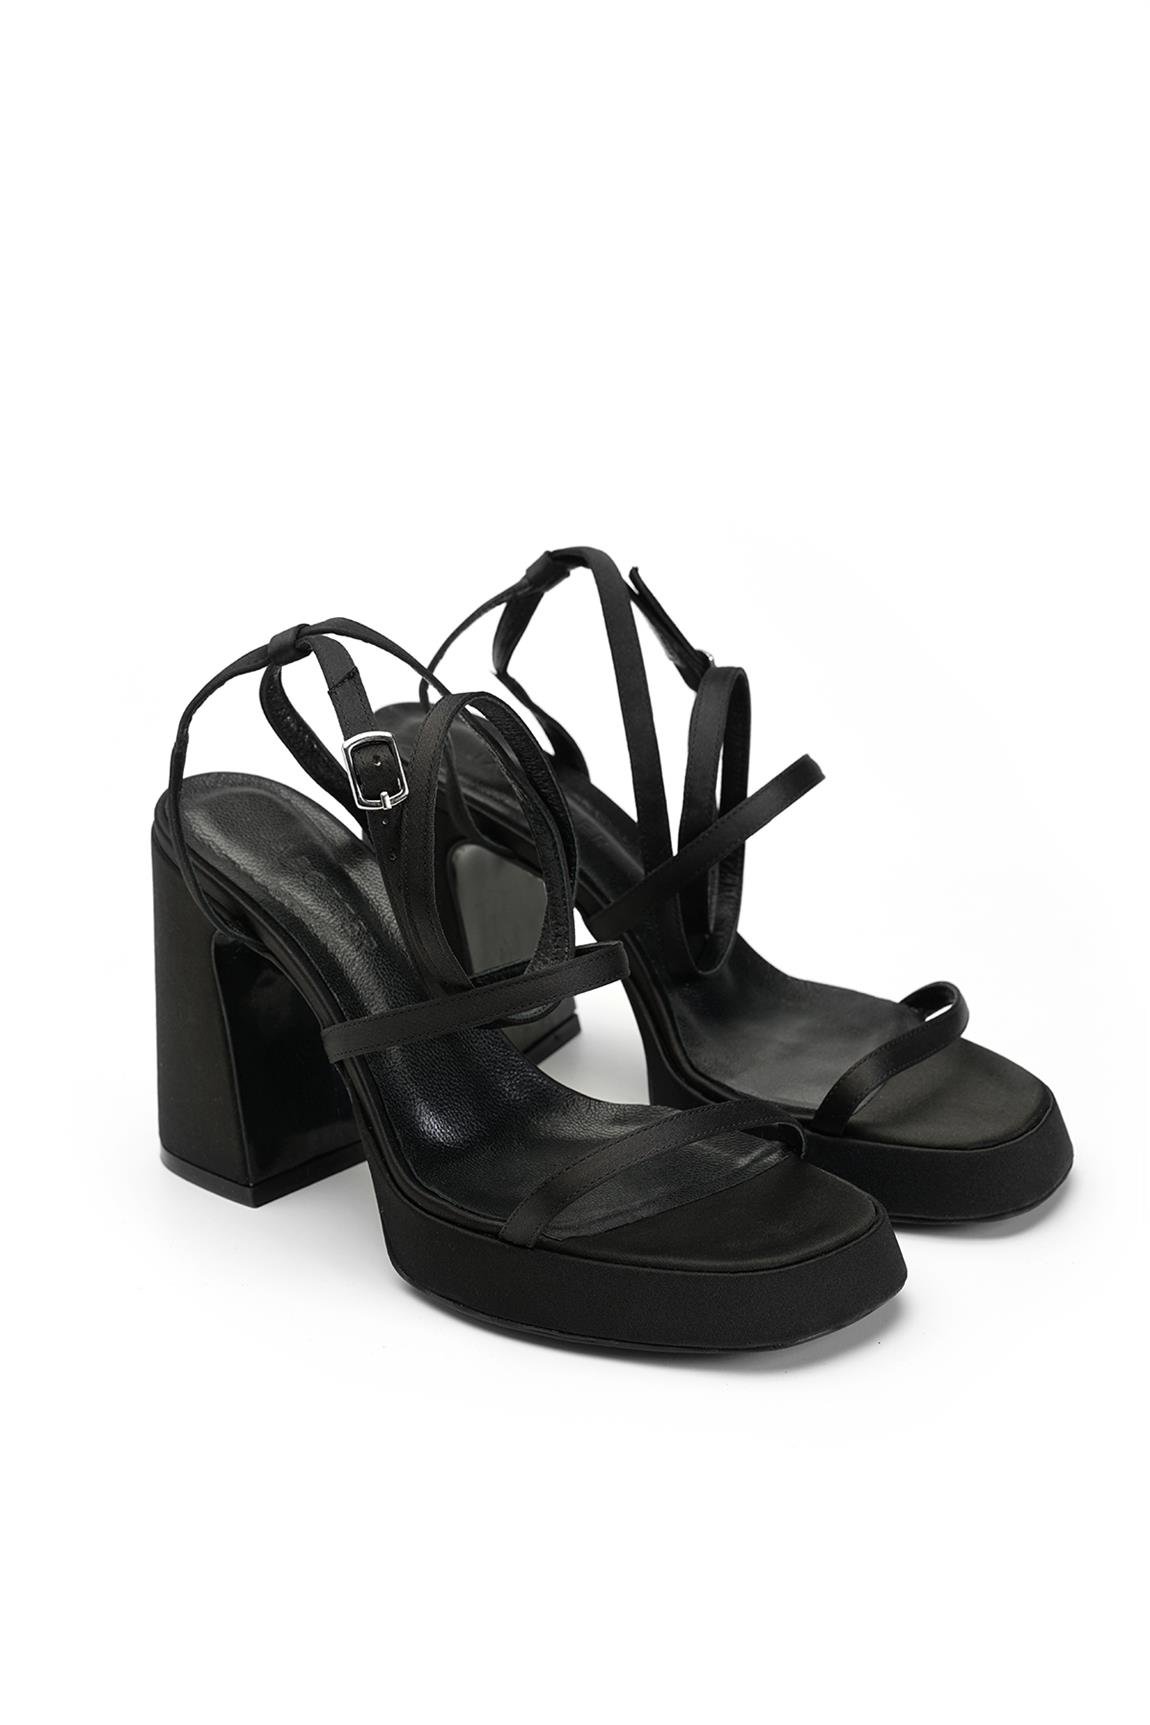 Jabotter Sheba Siyah Saten Platform Topuklu Sandalet - Jabotter